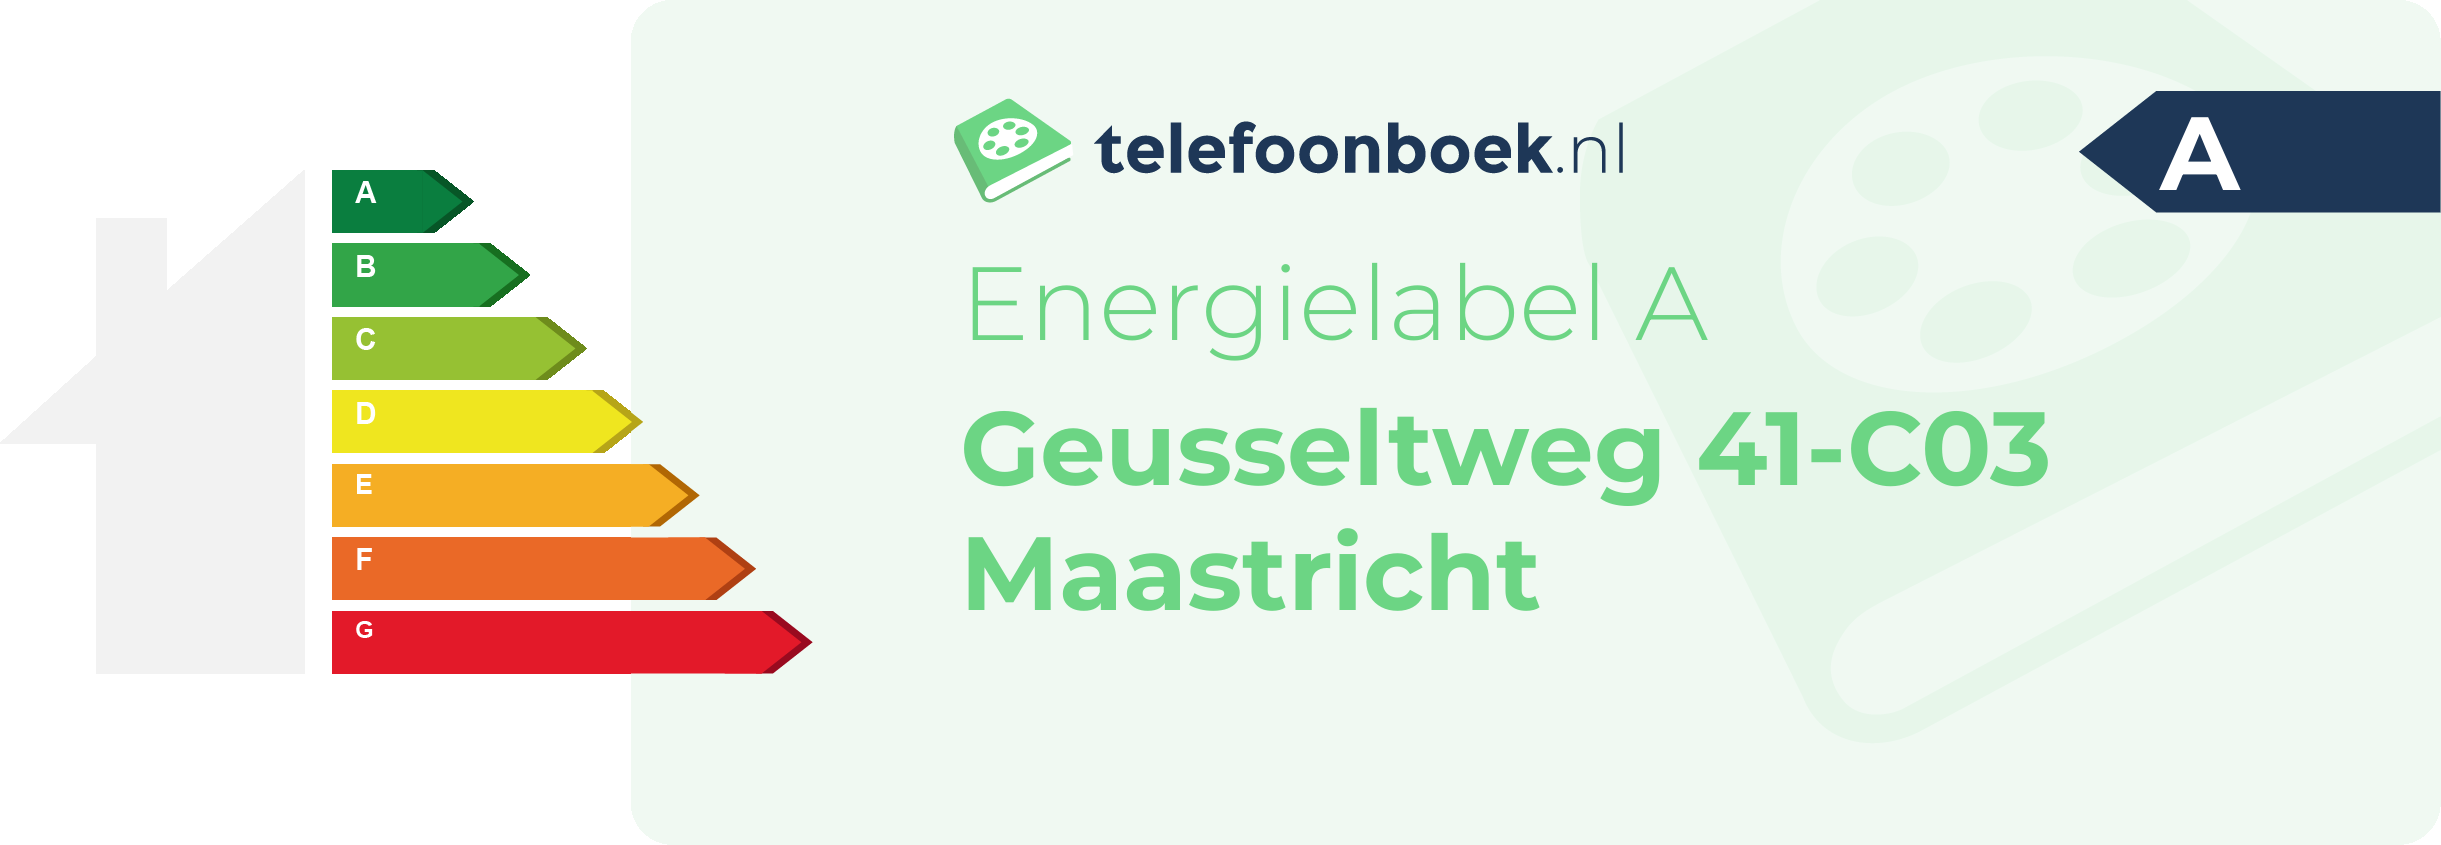 Energielabel Geusseltweg 41-C03 Maastricht